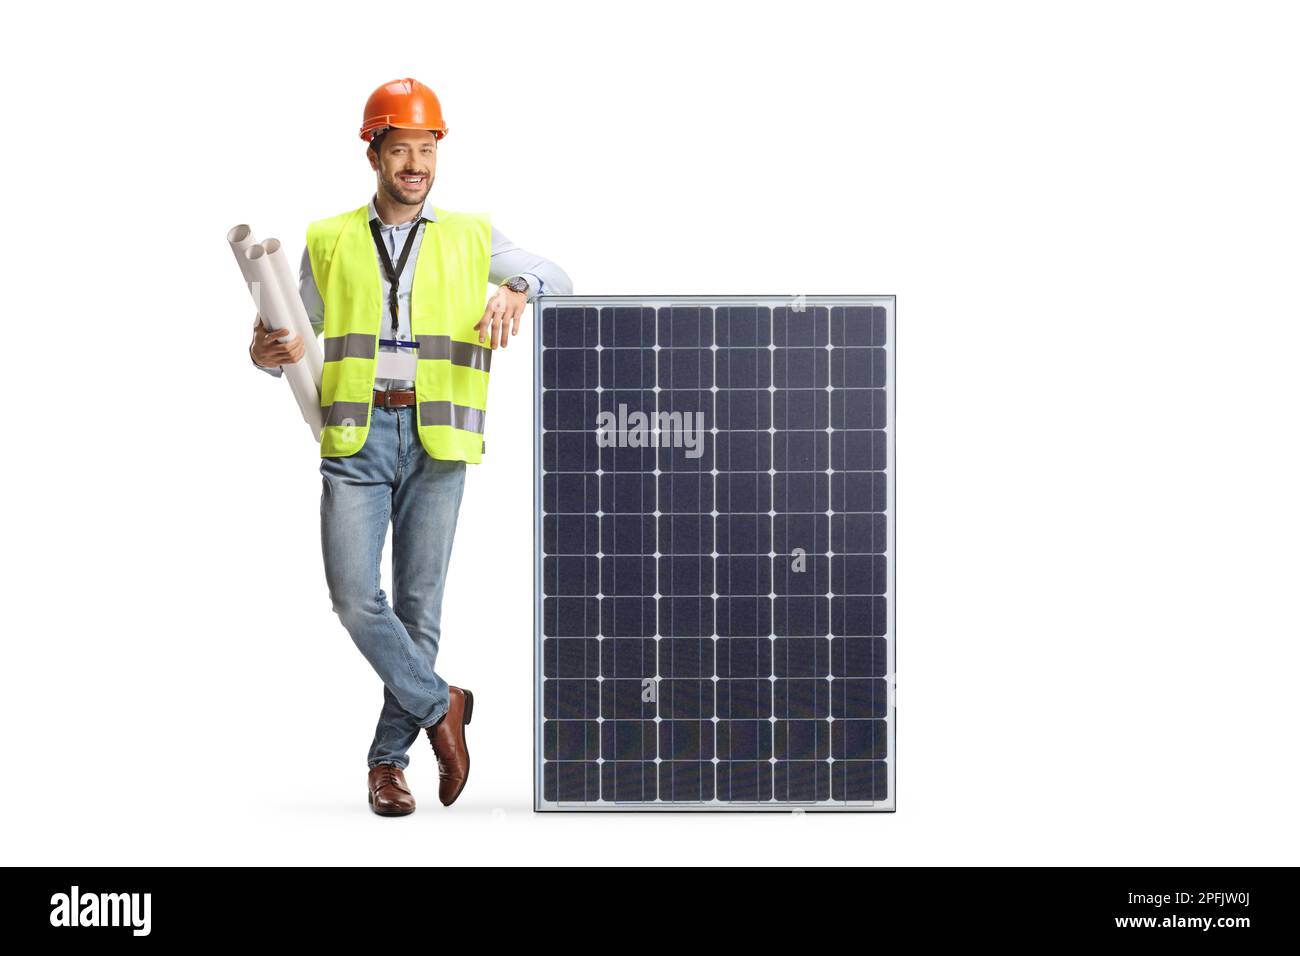 Ingenieur mit Blaupausen, die sich auf ein Solarmodul stützen, isoliert auf weißem Hintergrund Stockfoto